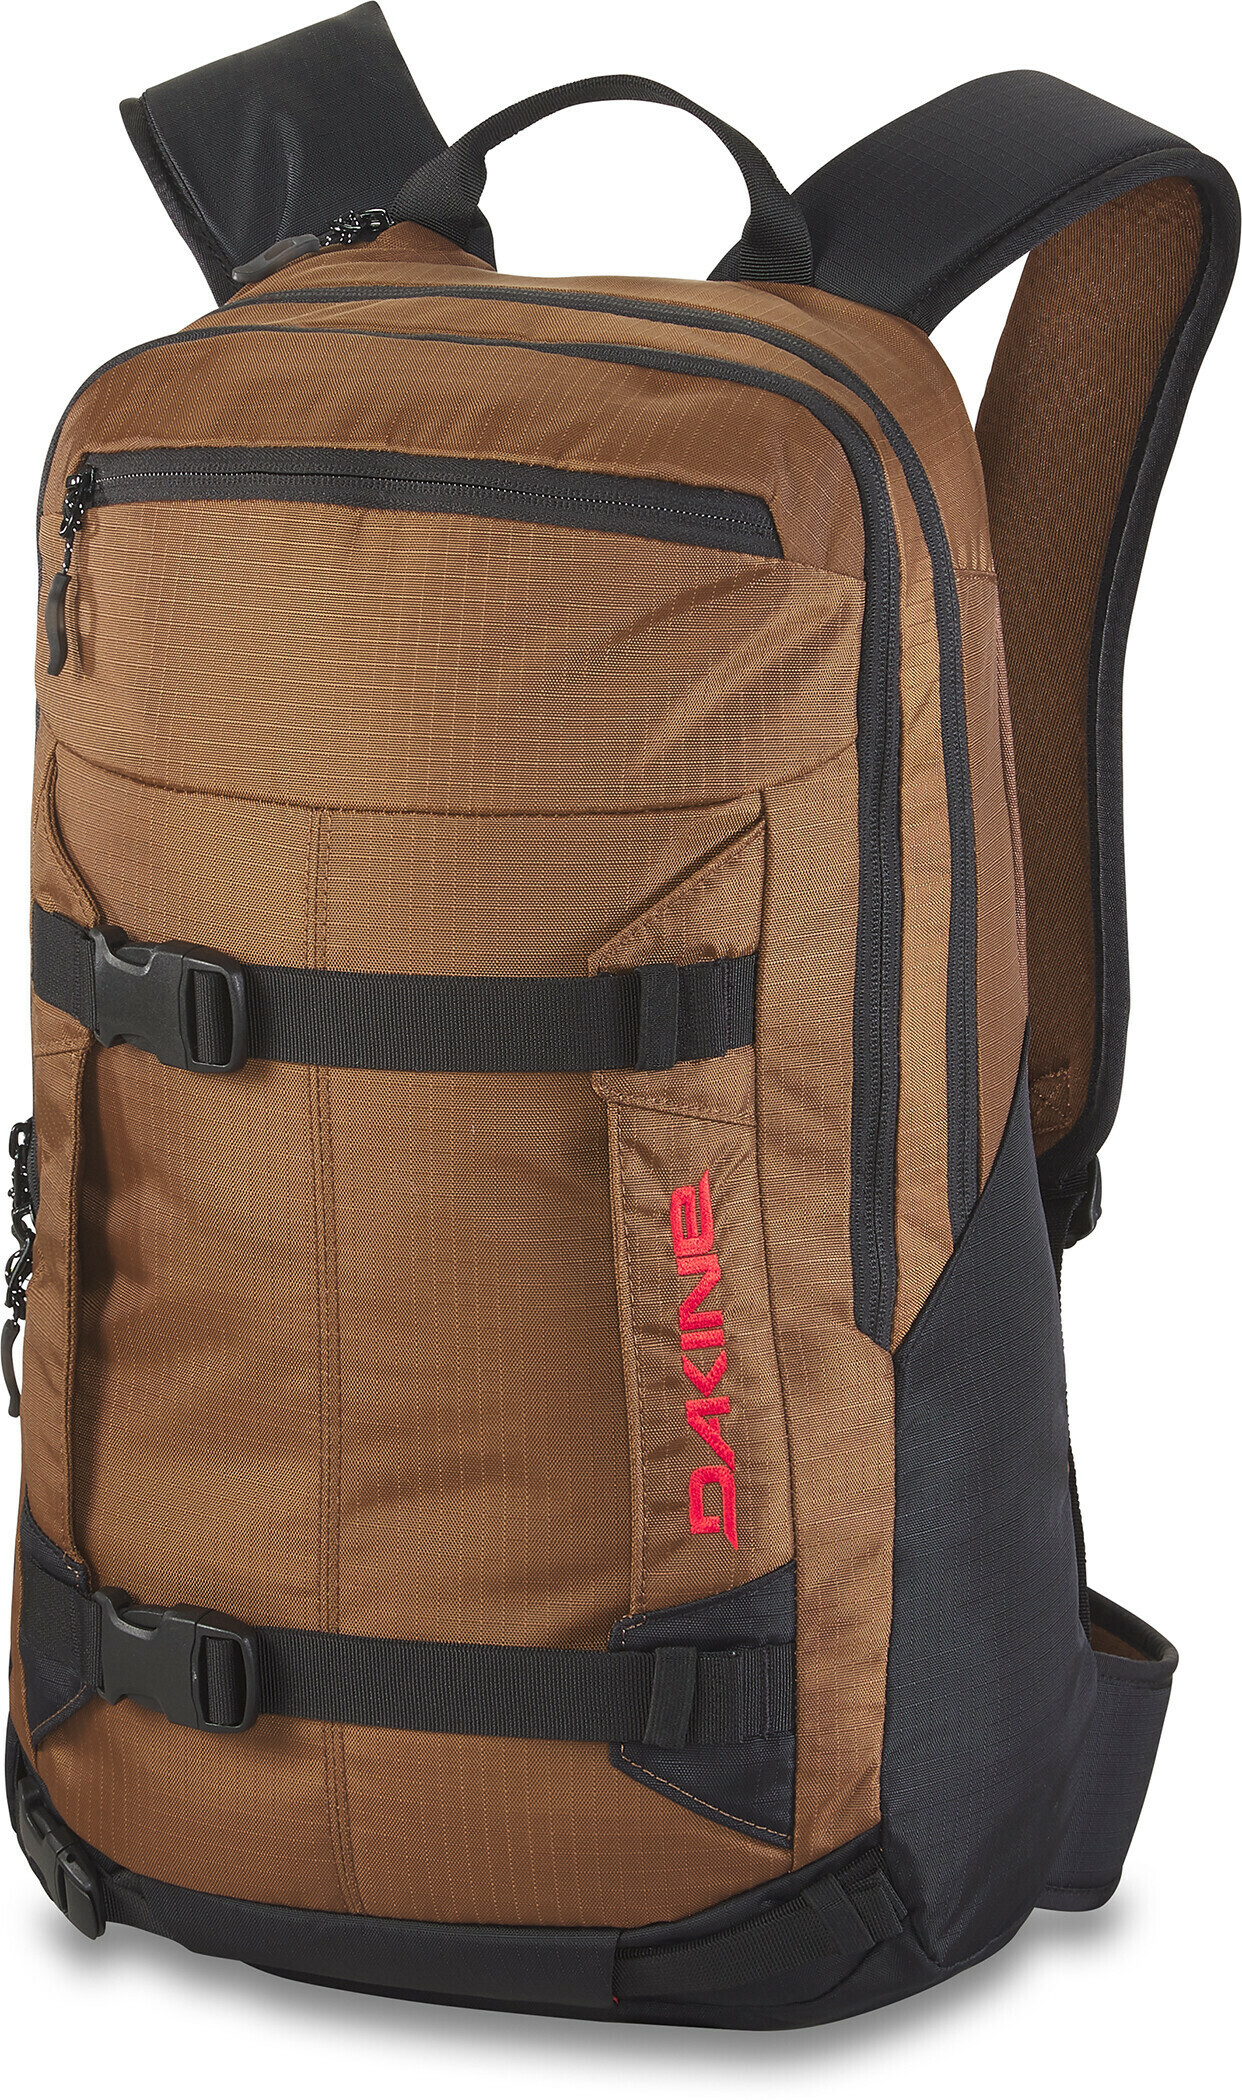 Mission Pro 25L Backpack